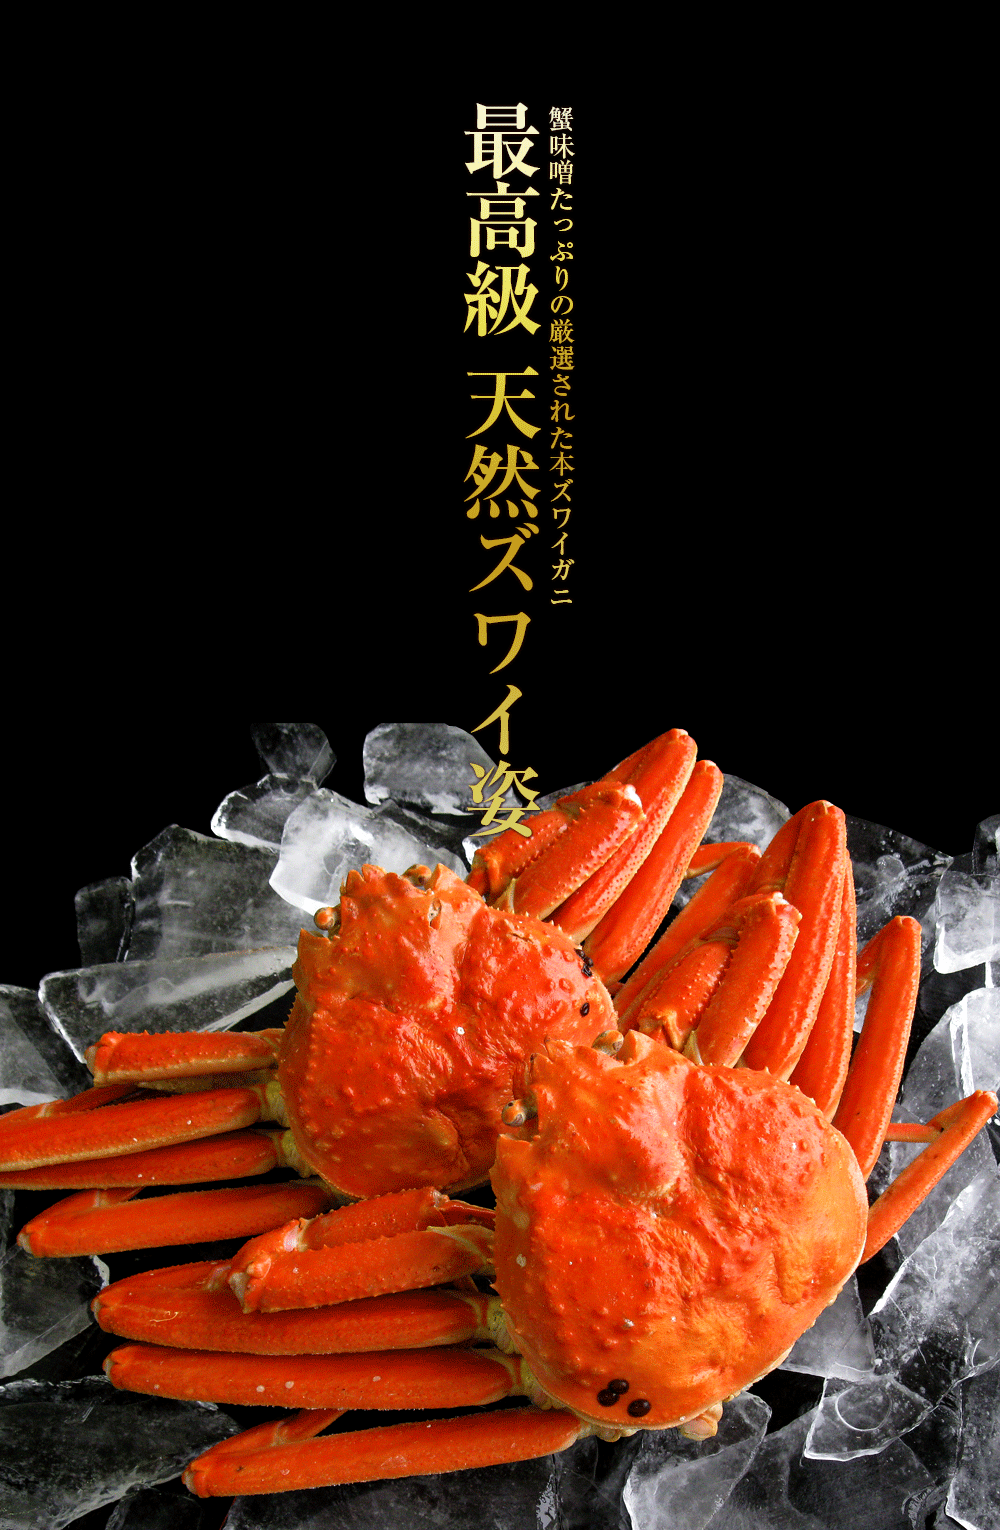 ズワイガニ 大サイズ 蟹味噌たっぷりの厳選品 ボイル済み 天然 ずわい蟹 姿 約600g